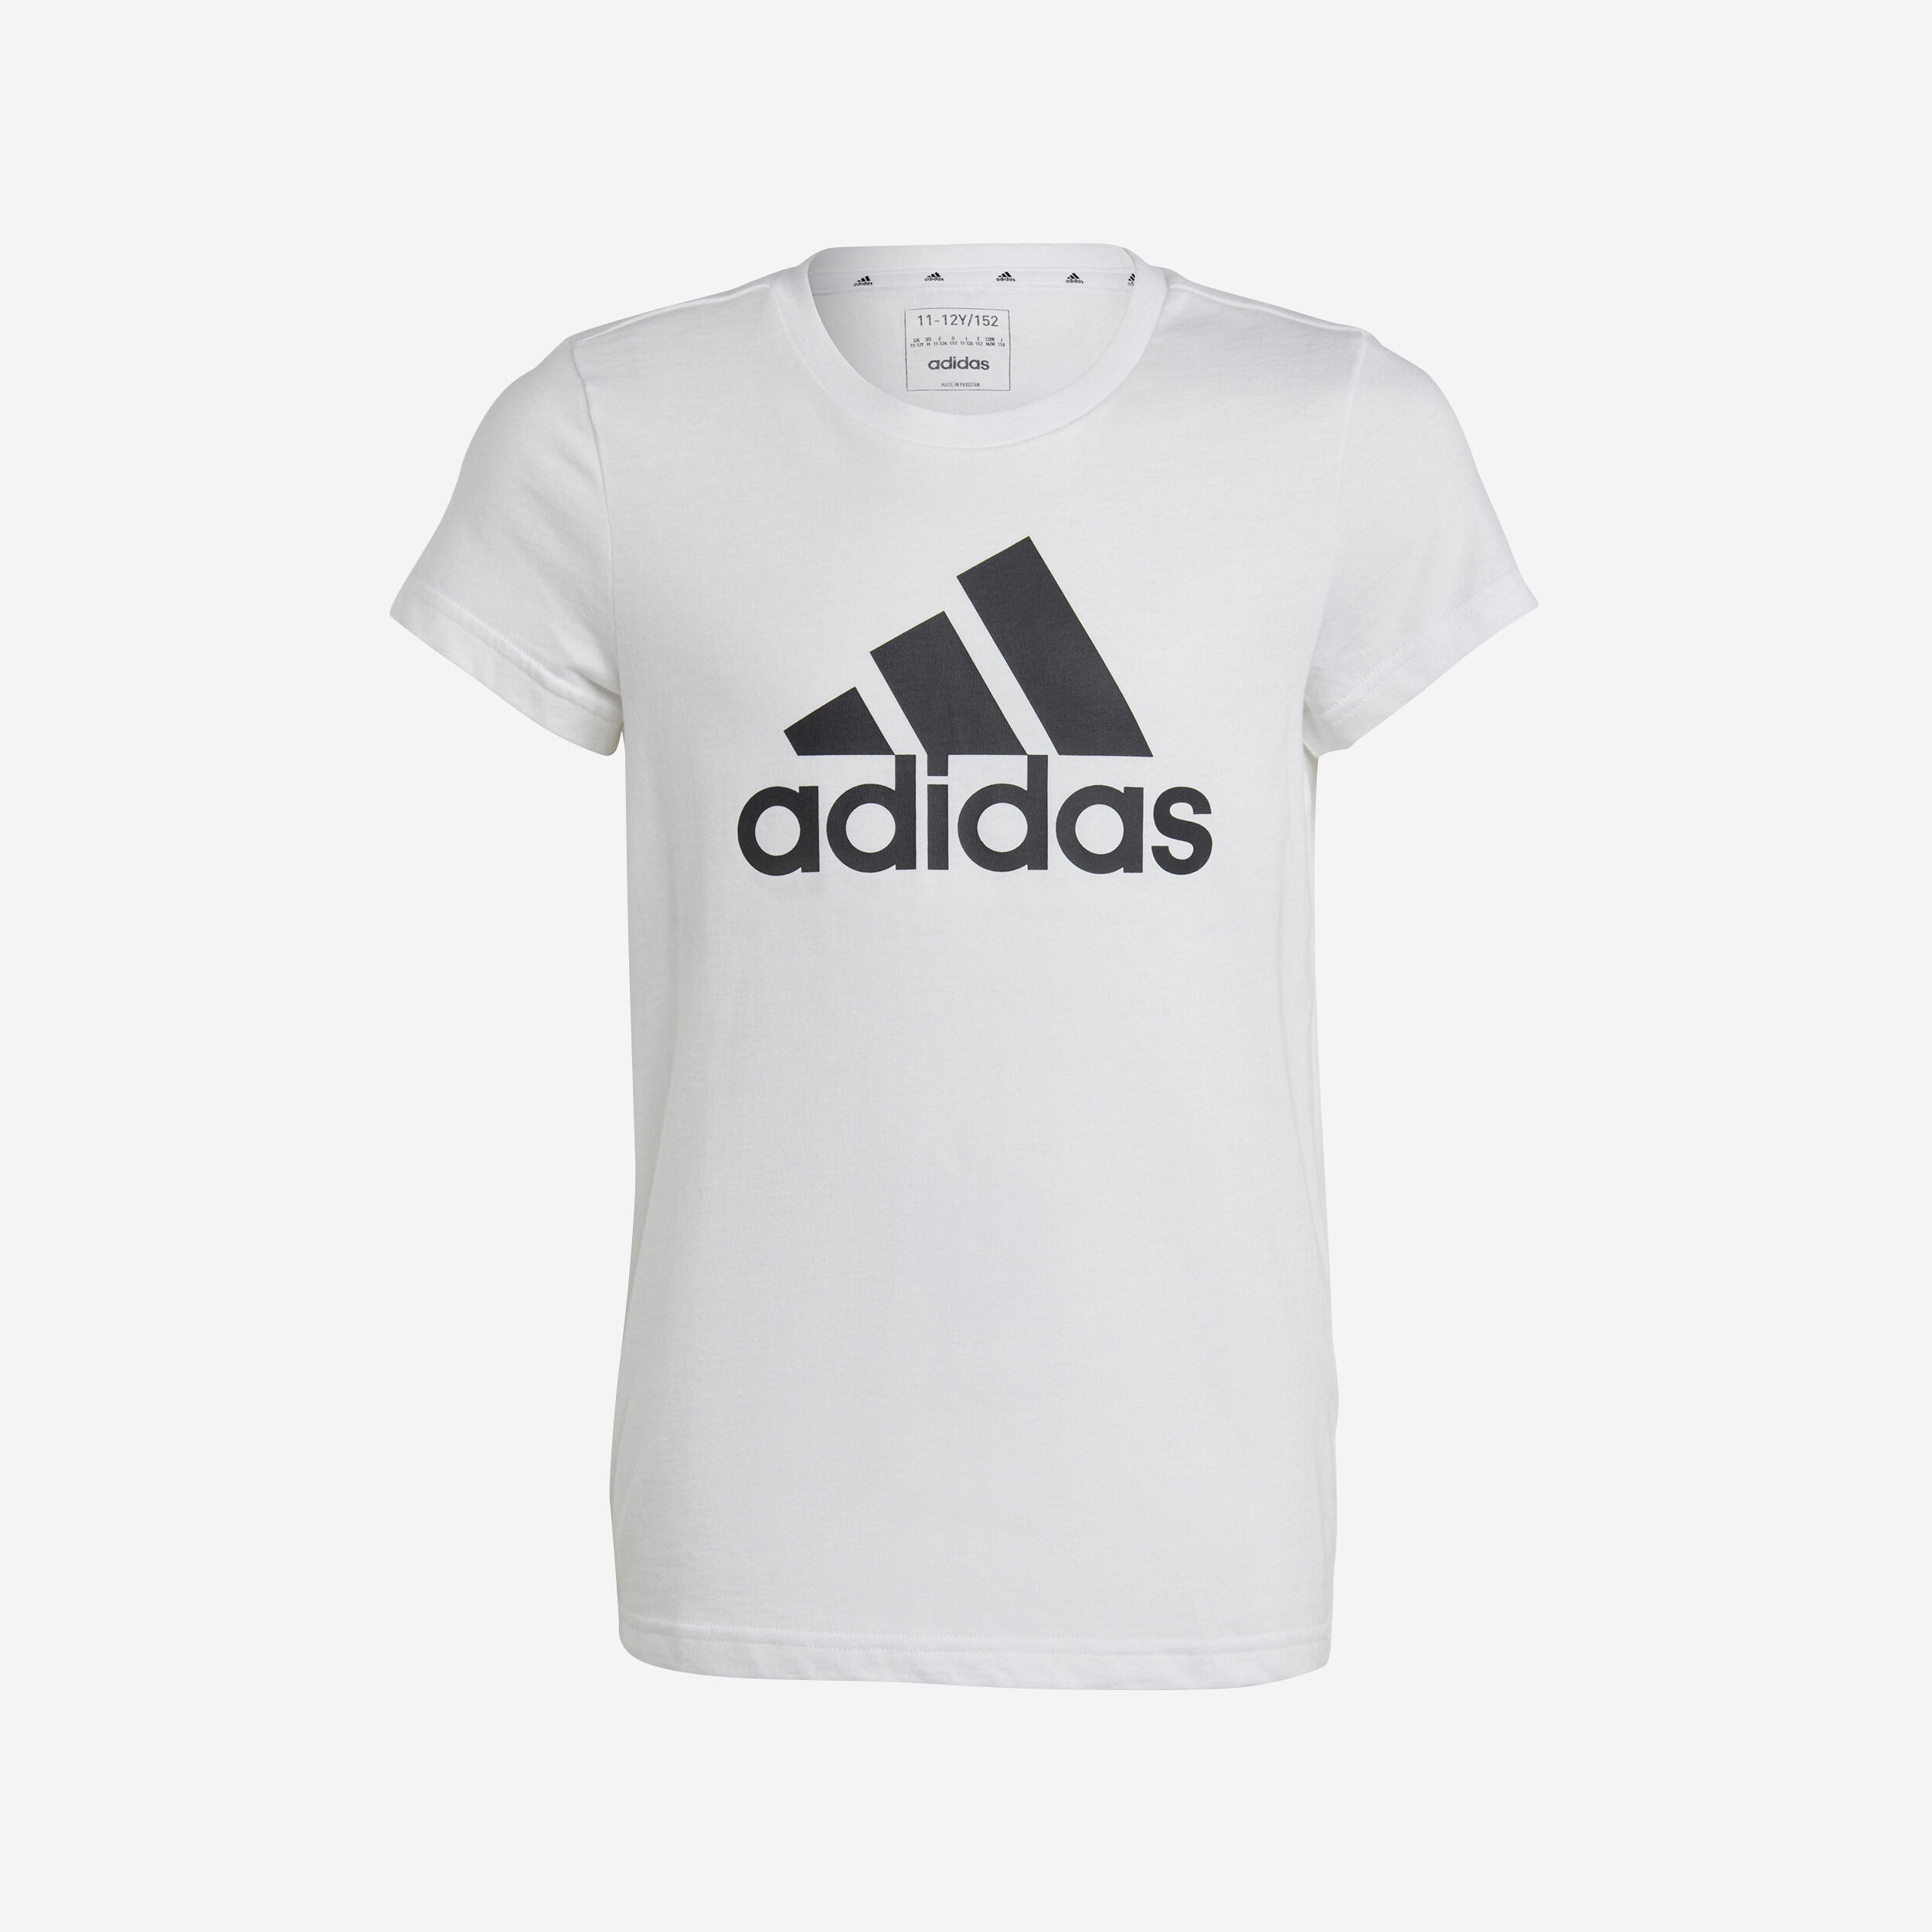 ADIDAS Girls' T-Shirt - White/Black Logo